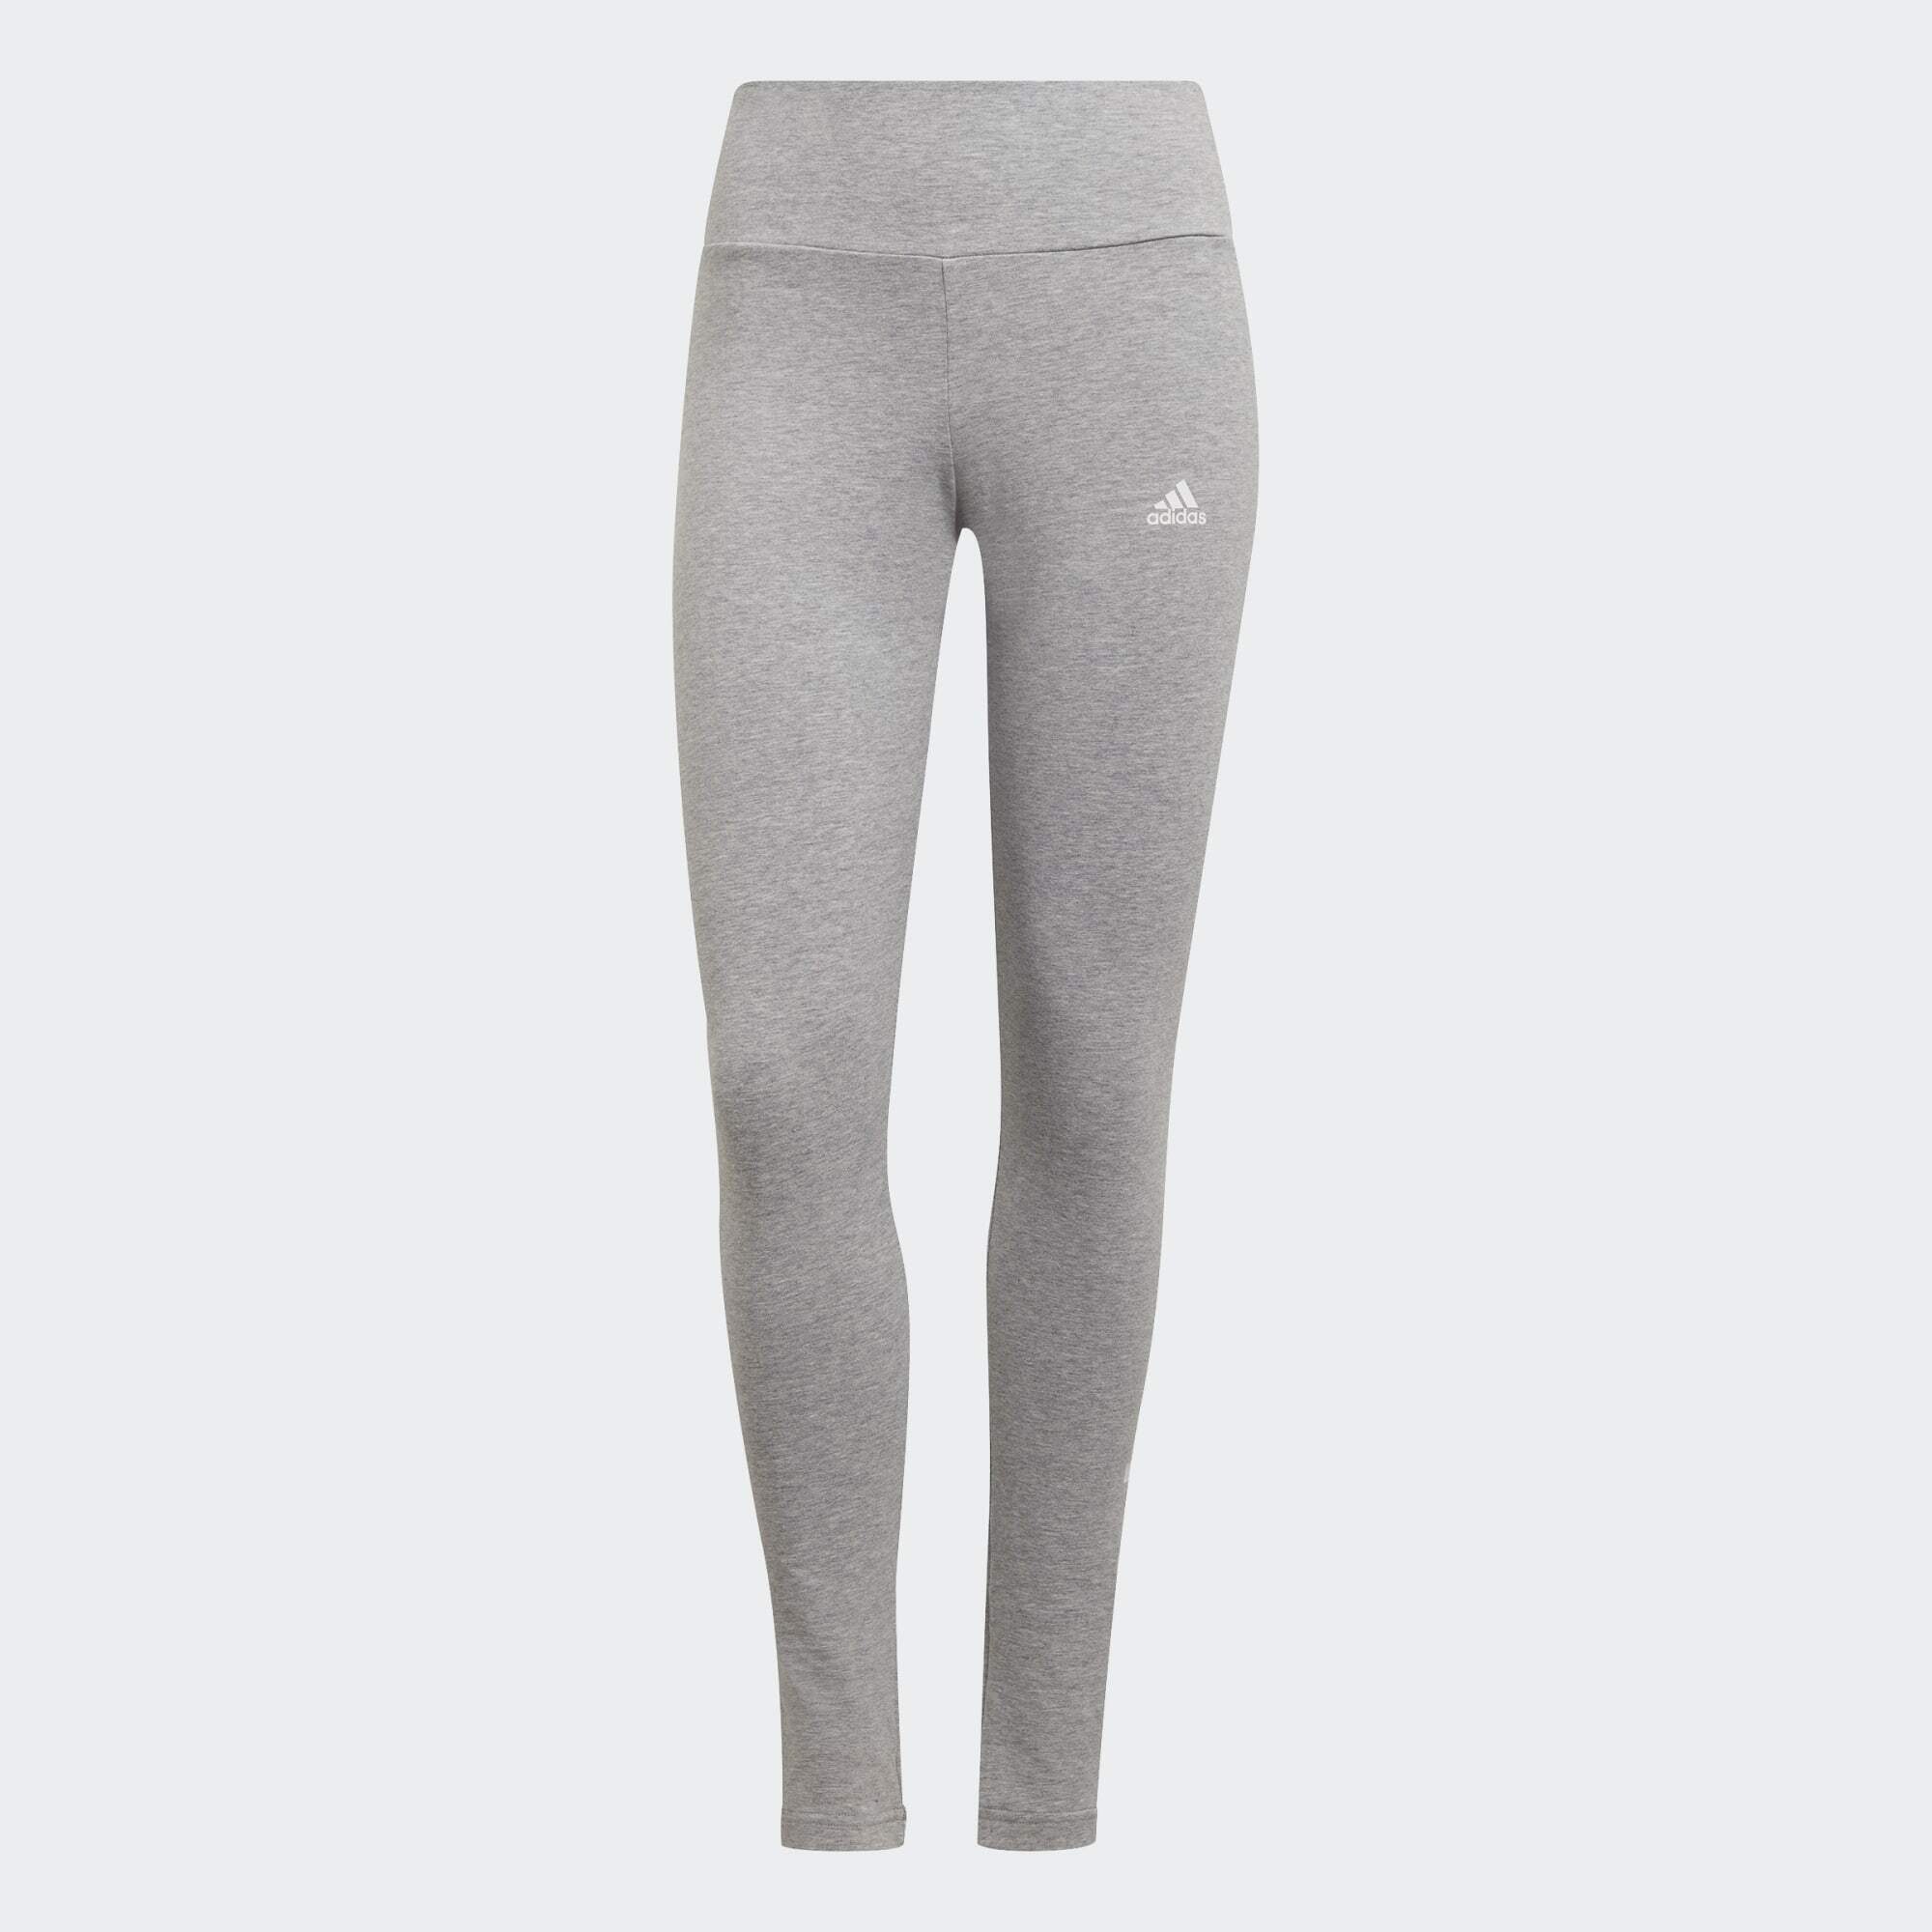 White HIGH-WAISTED LOGO Heather Sportswear Leggings ESSENTIALS / Grey adidas LEGGINGS Medium